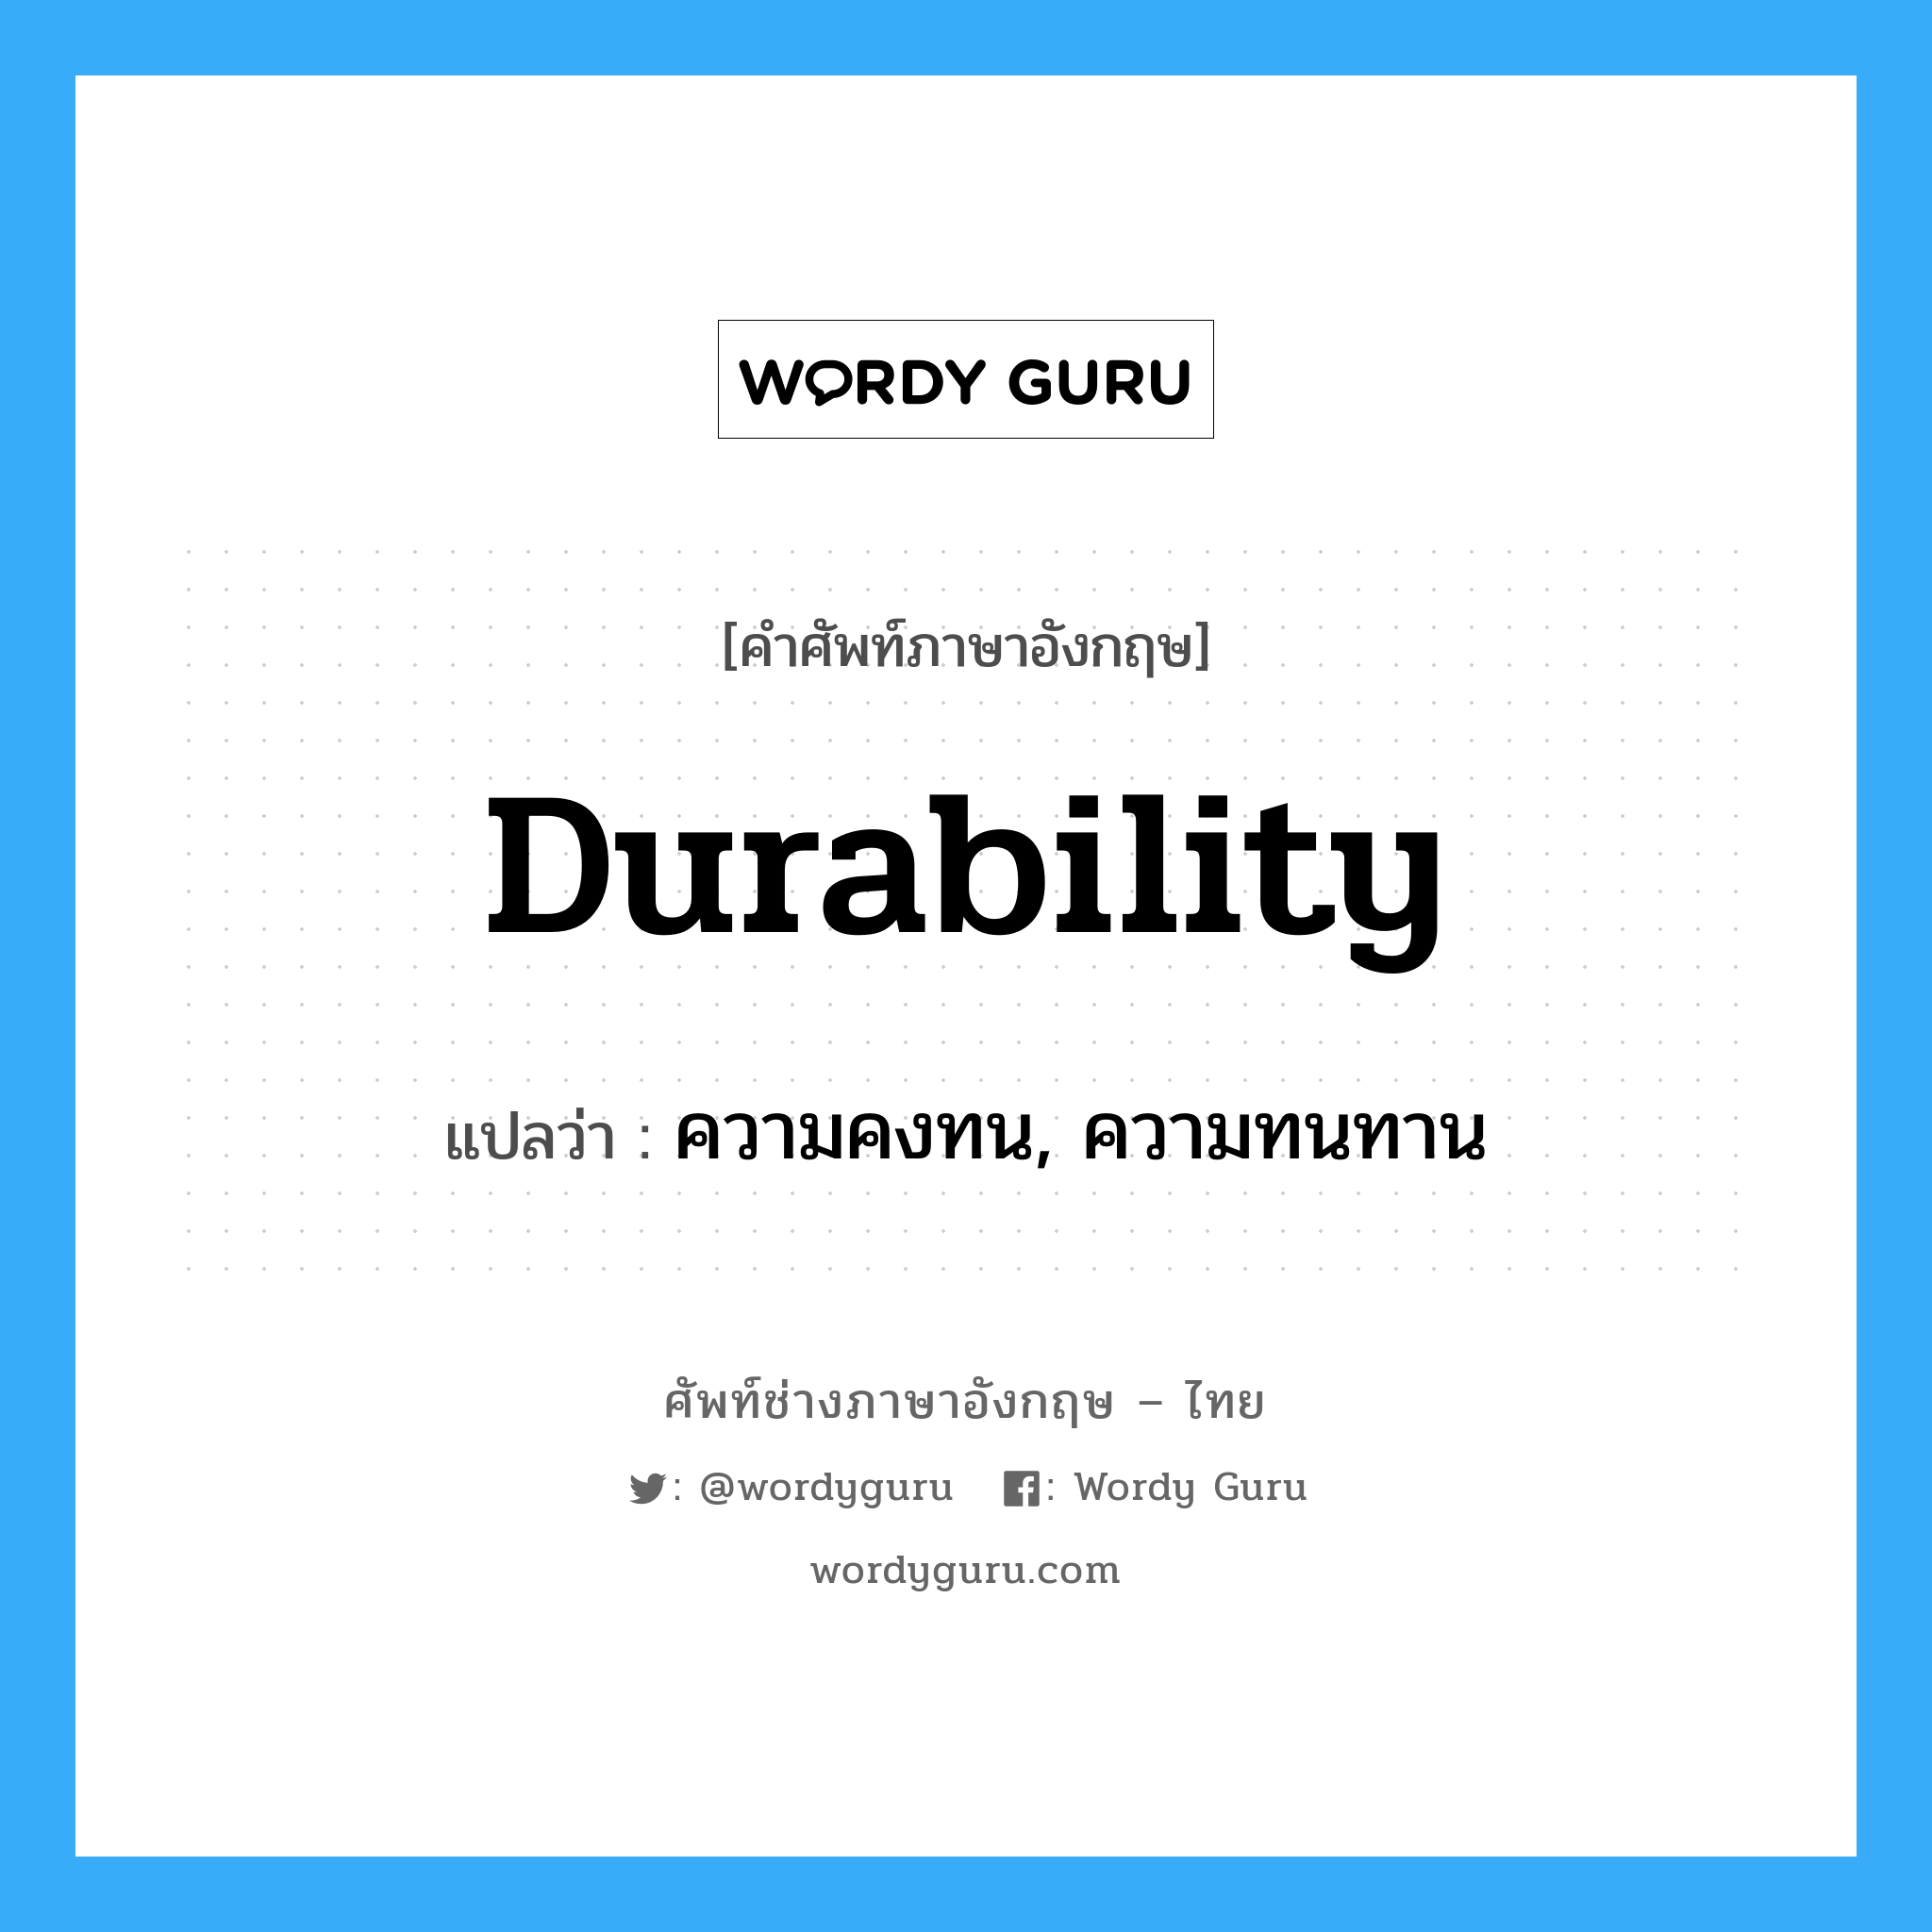 durability แปลว่า?, คำศัพท์ช่างภาษาอังกฤษ - ไทย durability คำศัพท์ภาษาอังกฤษ durability แปลว่า ความคงทน, ความทนทาน